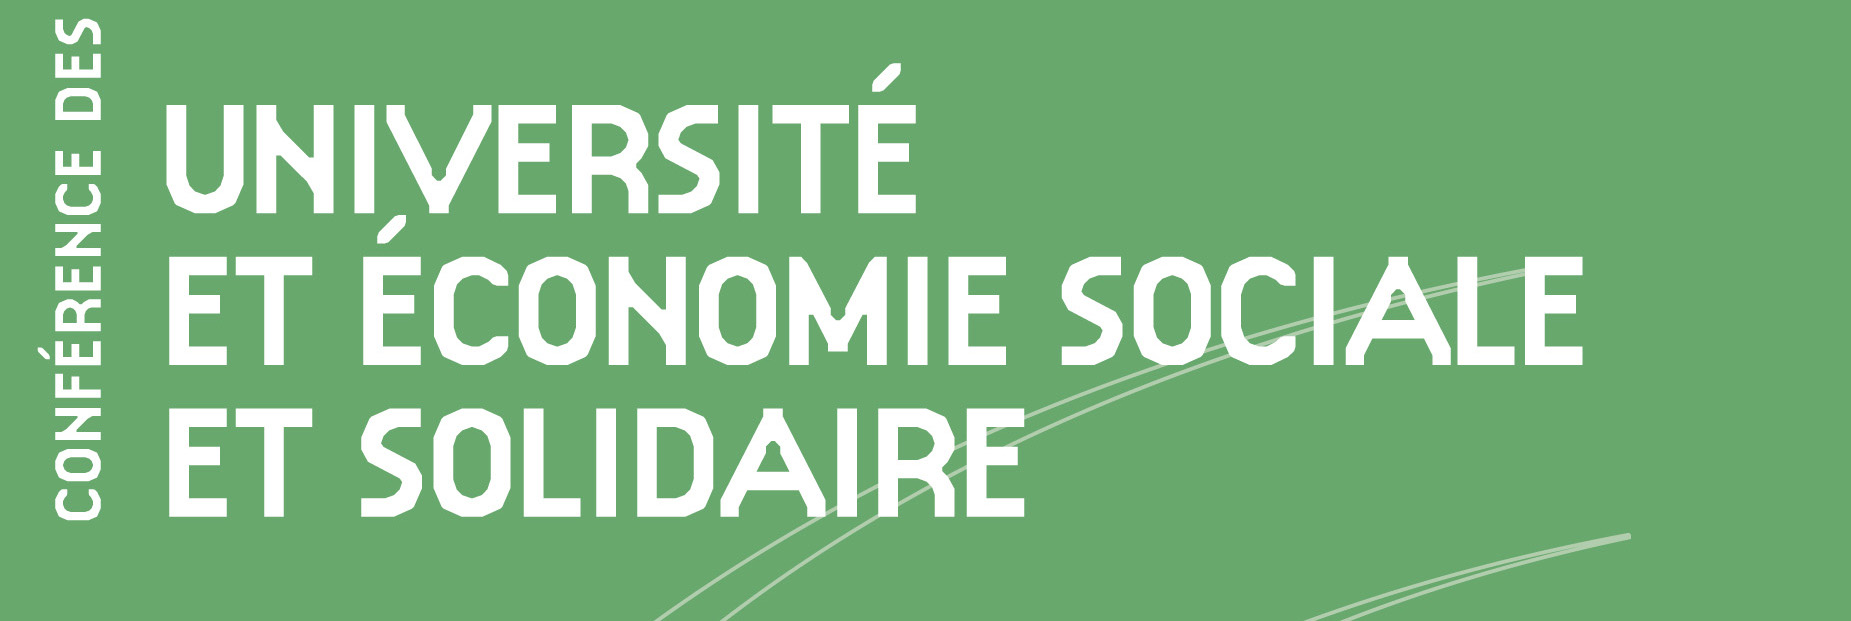 La CPU lance le premier guide « Université et Economie sociale et solidaire» en partenariat avec le Crédit Coopératif